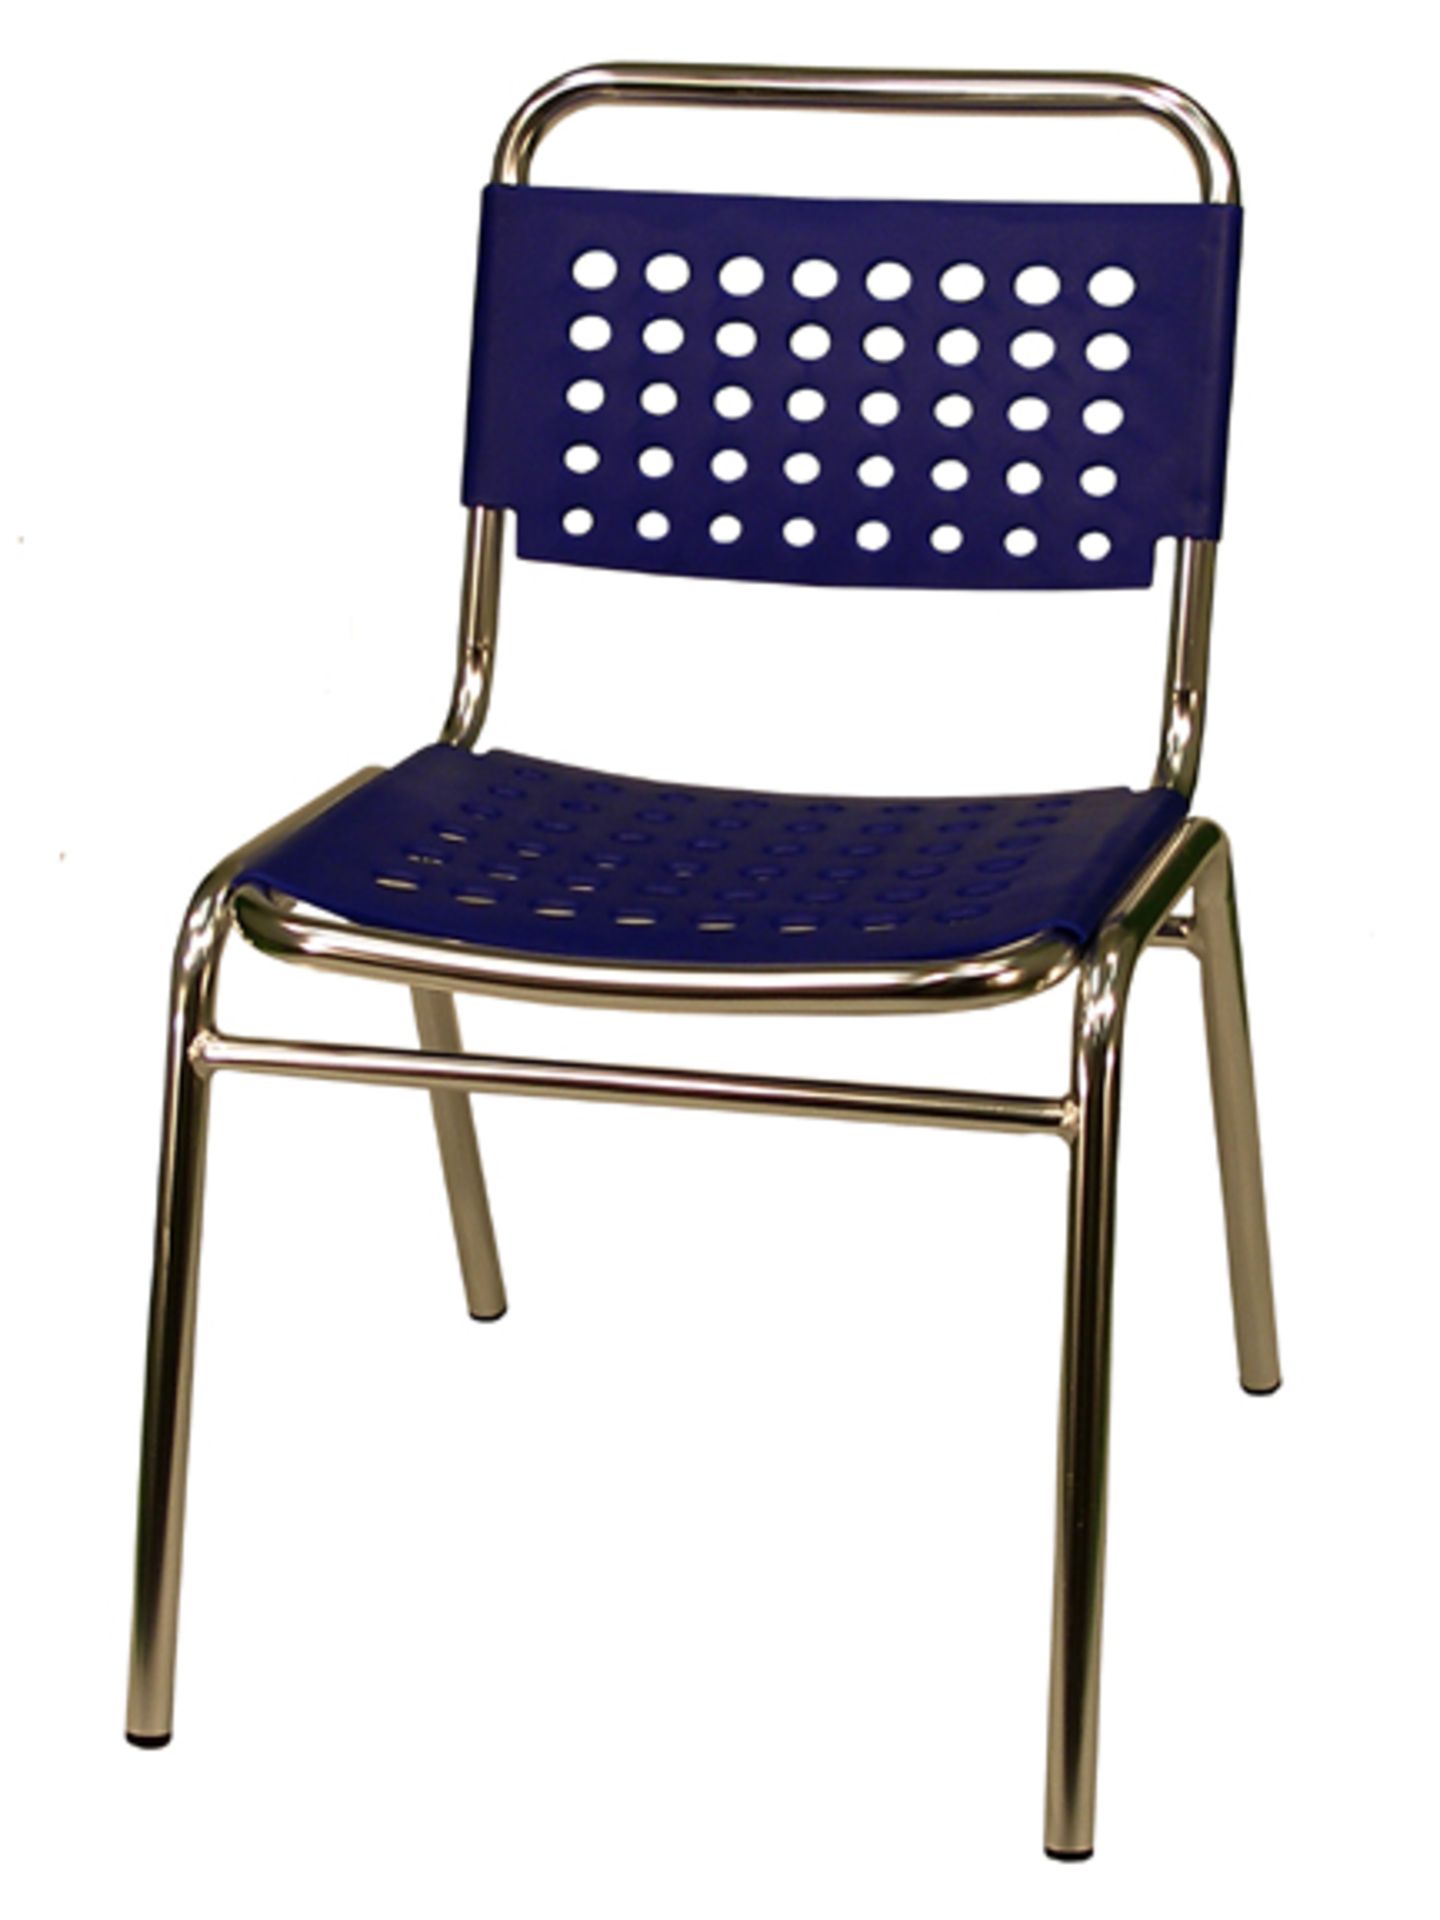 South Miami Beach side chair blue. 14 total